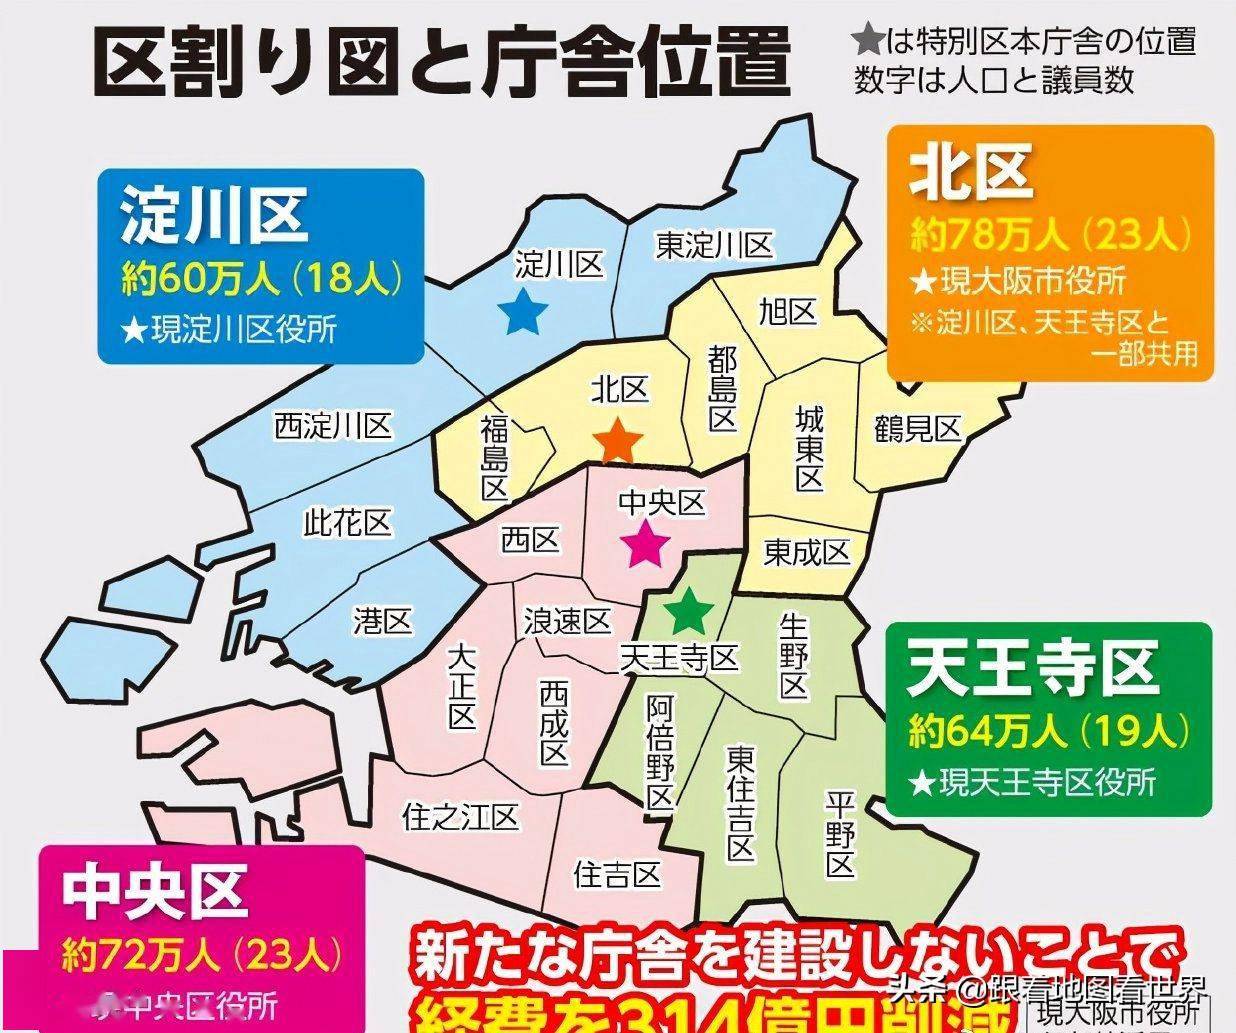 日本 大阪都构想 建设成 副首都 是蓝图还是噱头 大阪府